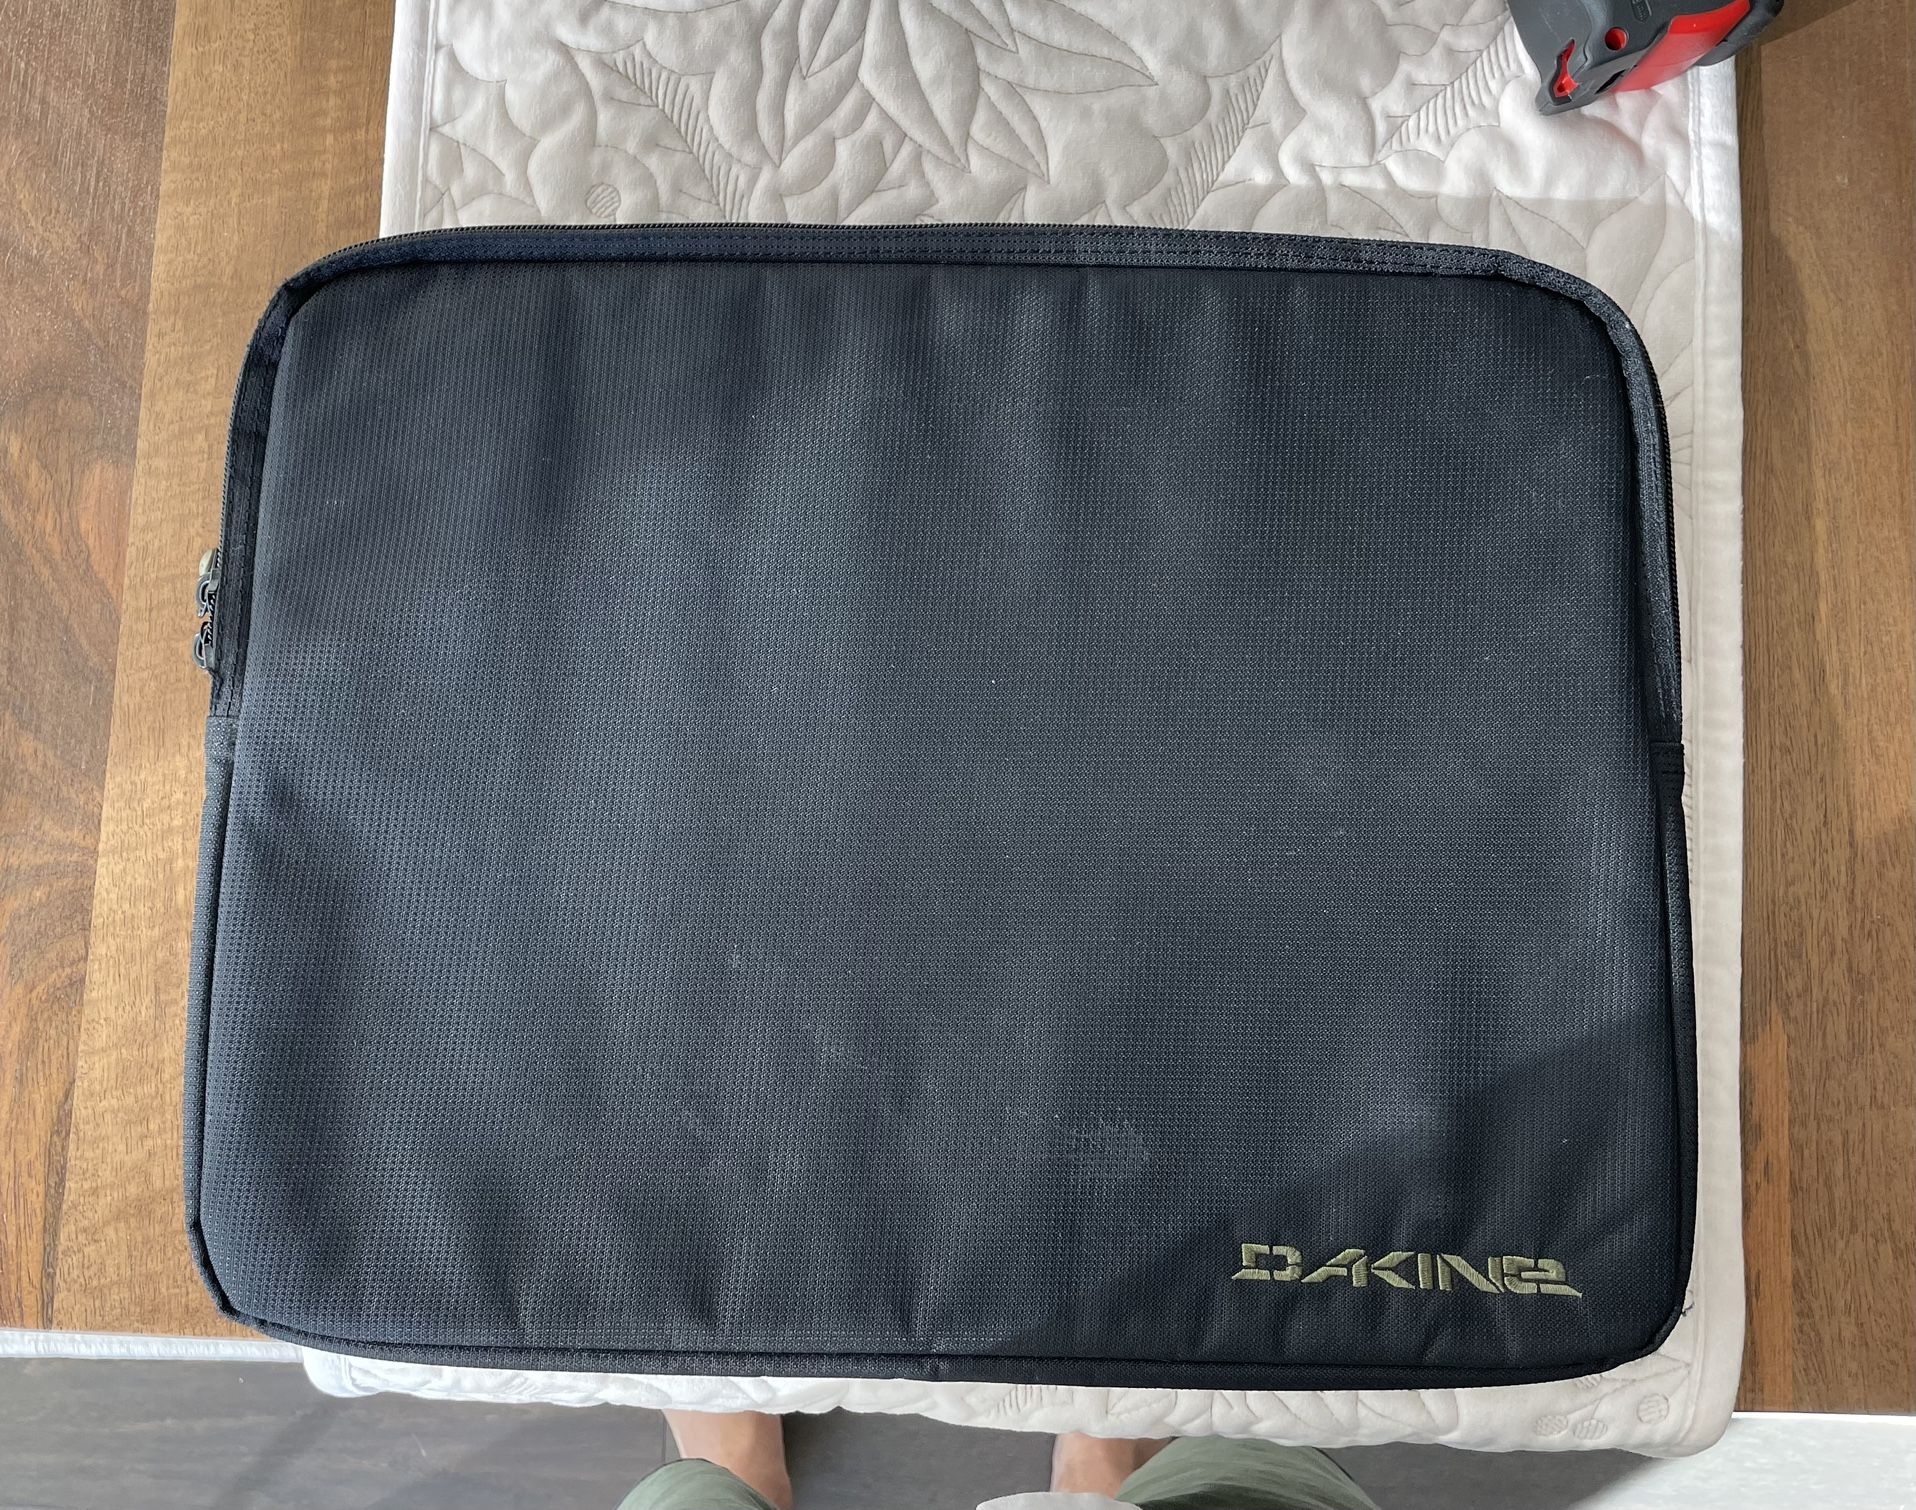 Dakine laptop case - 15 X 12”, black. 